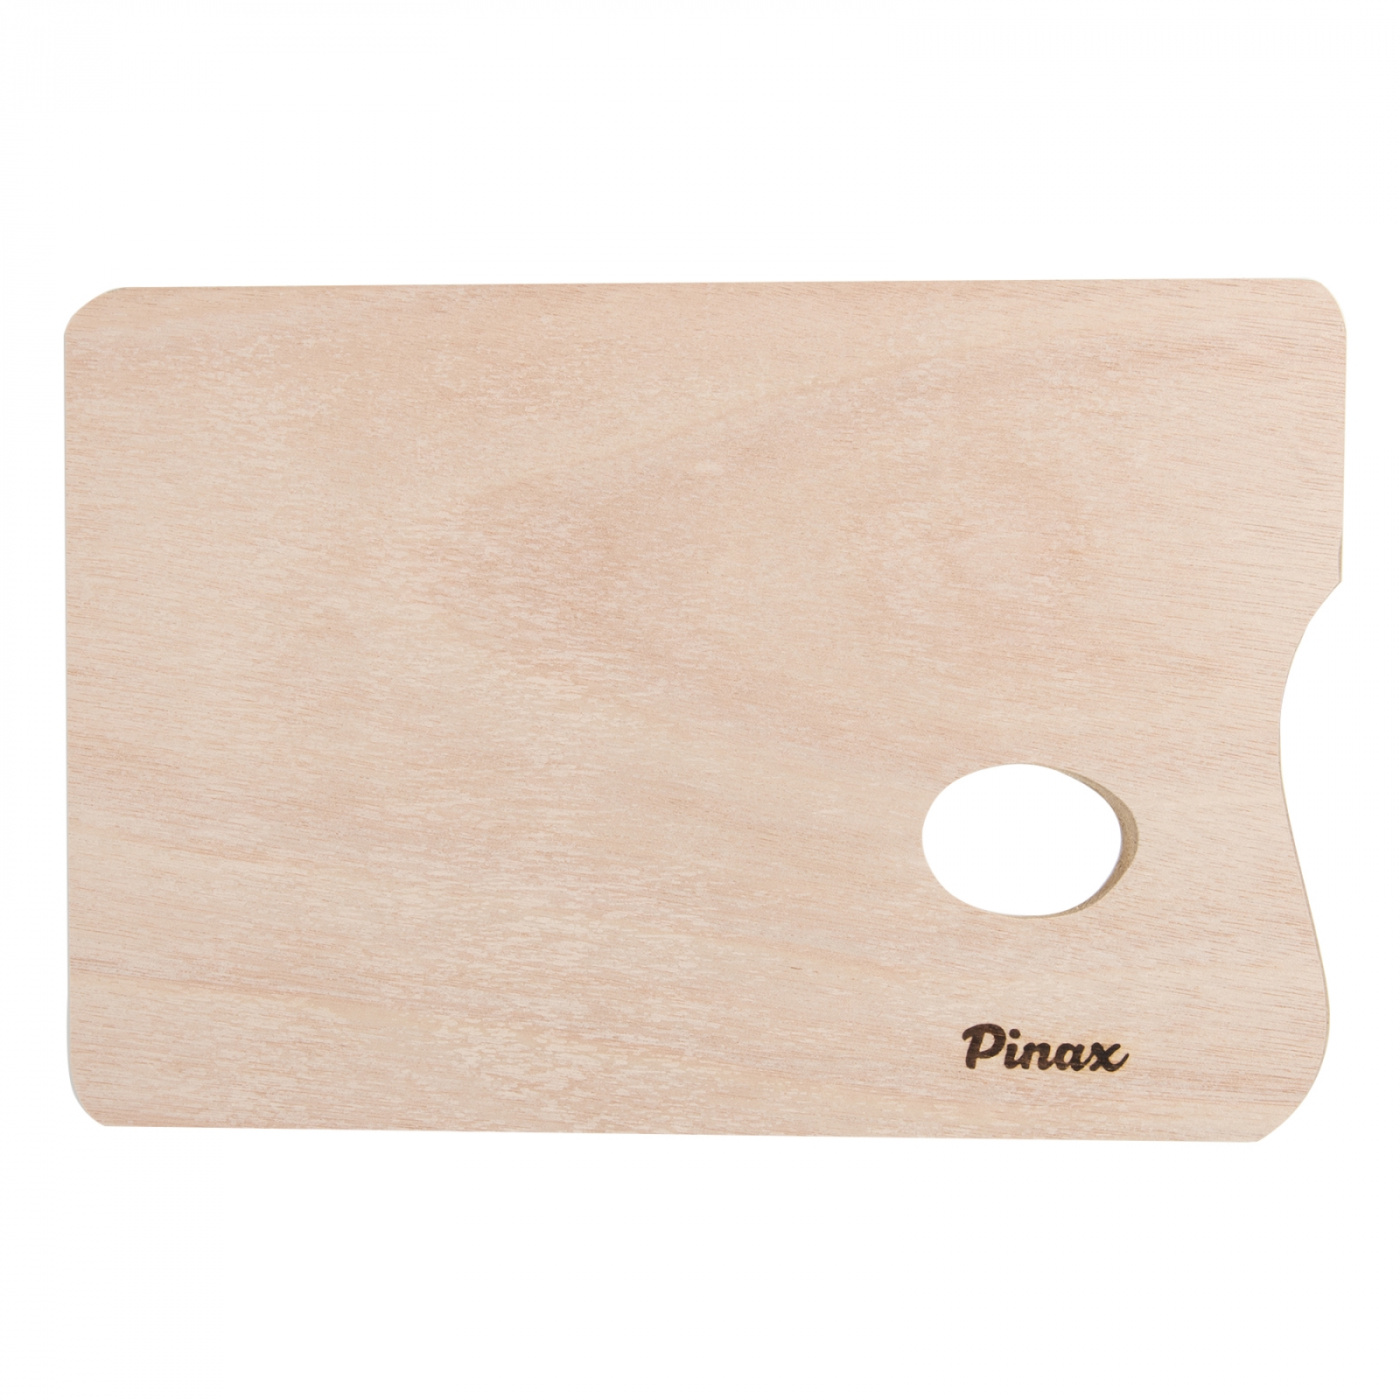 Палитра деревянная прямоугольная Pinax, 24х30 см журнал золотая палитра 1 10 2014